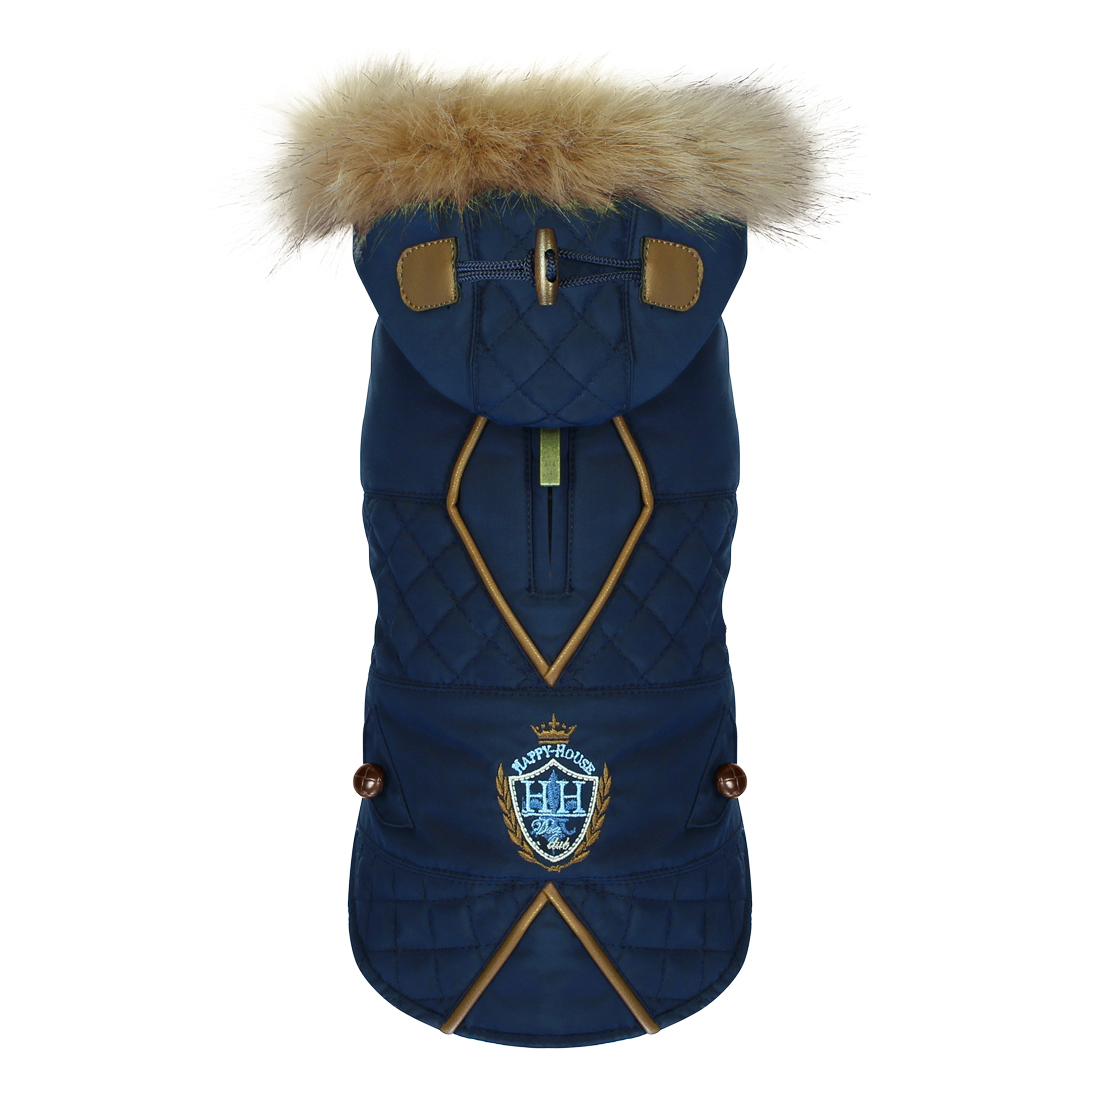 dogfashion jacket royal blue size 28